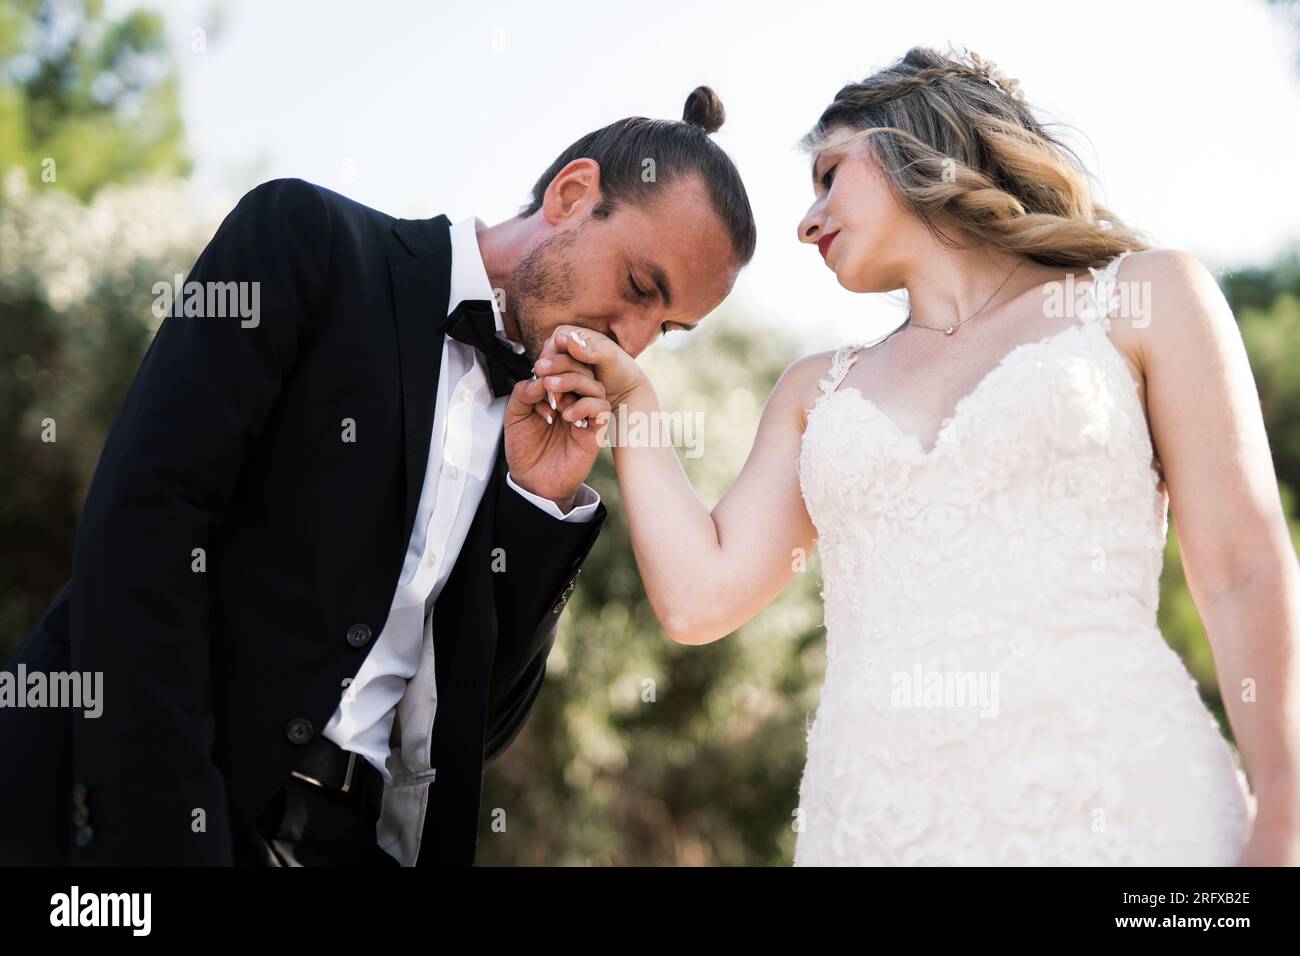 Ein charmanter Bräutigam küsst die Hand der Braut Foto Stock